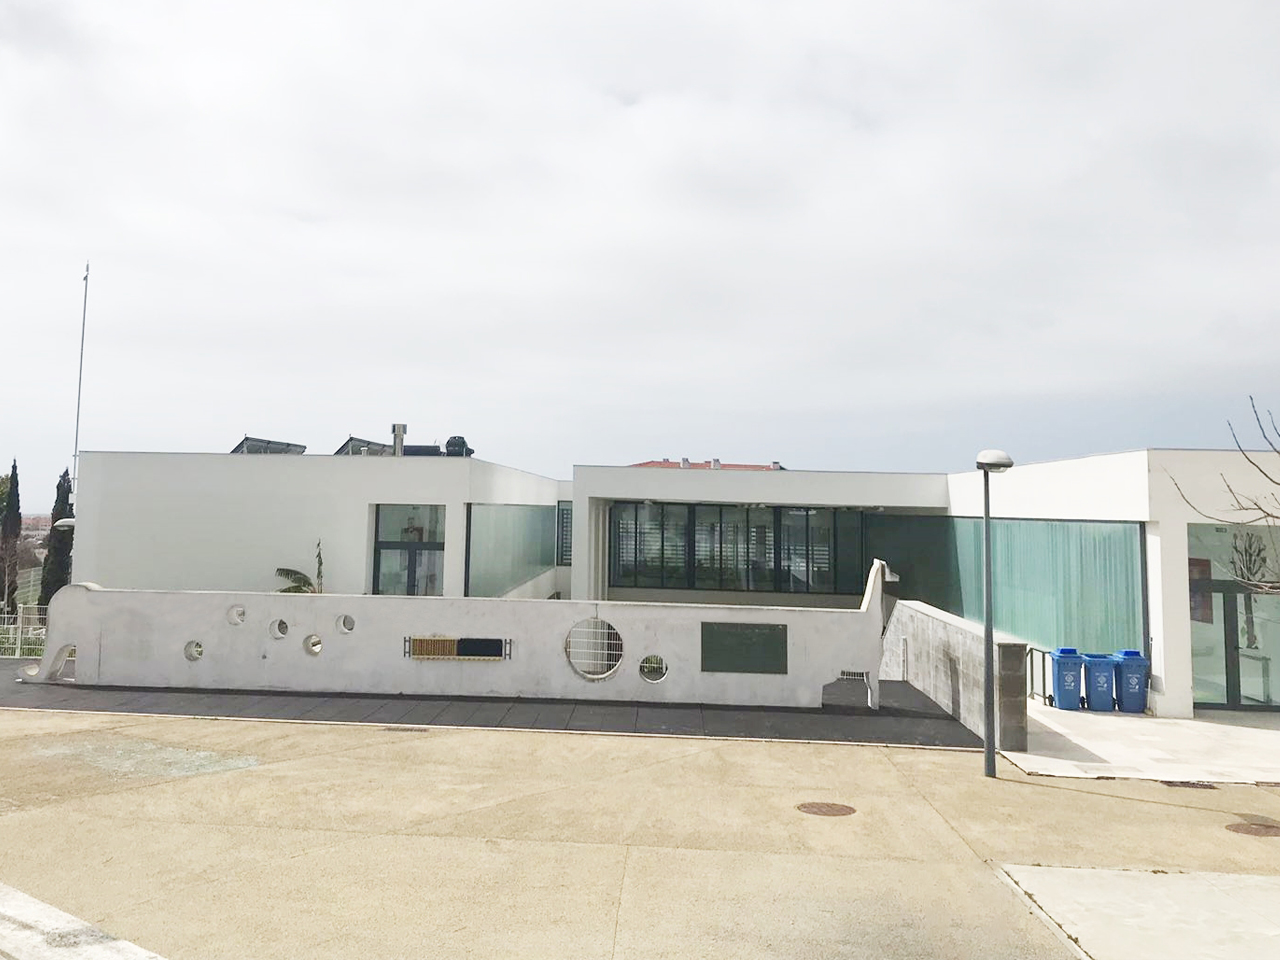 Aplicaciones Tecnológicas ha desarrollado, junto con el Ayuntamiento de Cascais, un estudio de protección contra el rayo para la instalación de pararrayos en las escuelas públicas del municipio de Cascais, situado al oeste de Lisboa, Portugal.